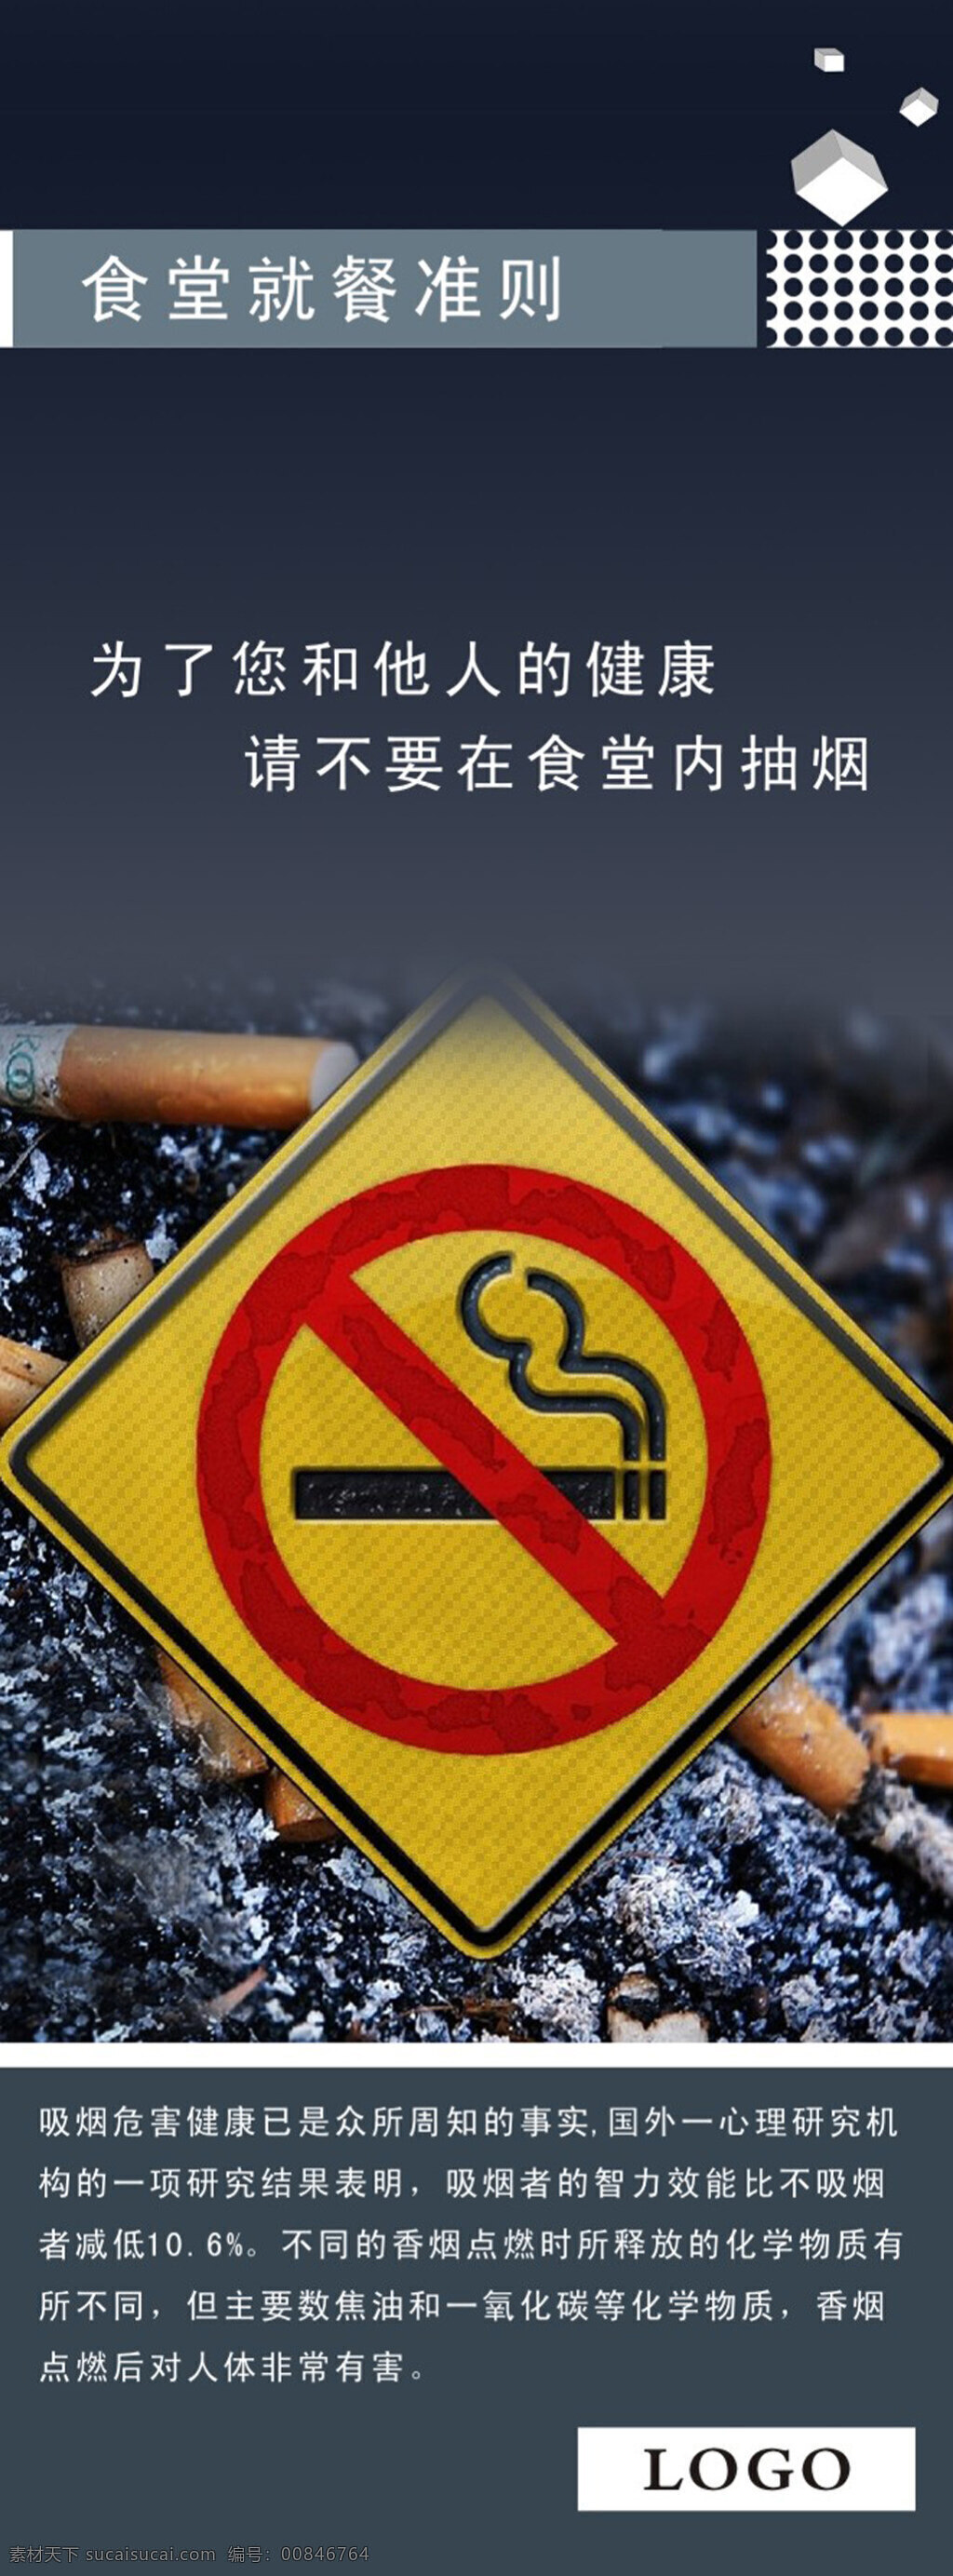 吸烟有害健康 禁止吸烟 食堂展架 食堂就餐准则 严禁吸烟 展架 x展架